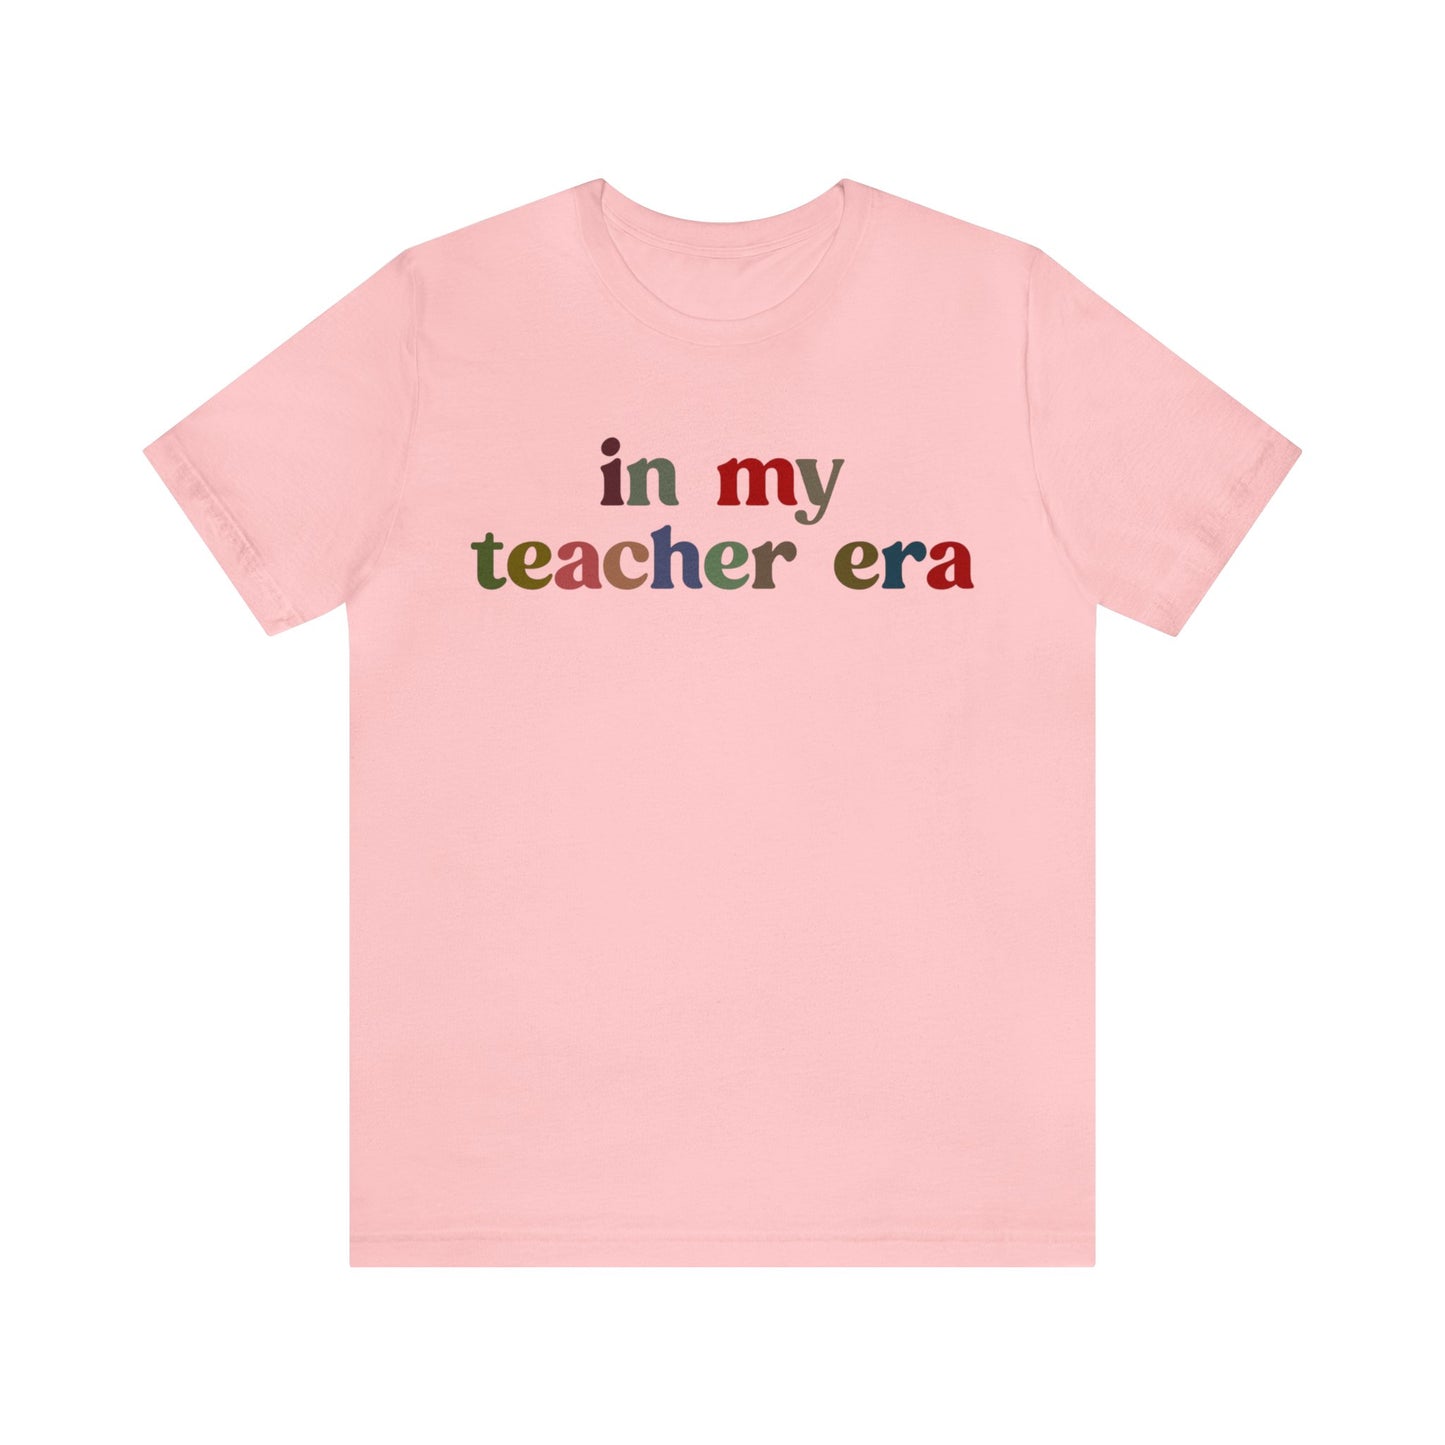 In My Teacher Era Shirt, New Teacher Shirt, Future Teacher Shirt, Funny Teacher Shirt, Teacher's Month Shirt, School Gift Shirt, T1352